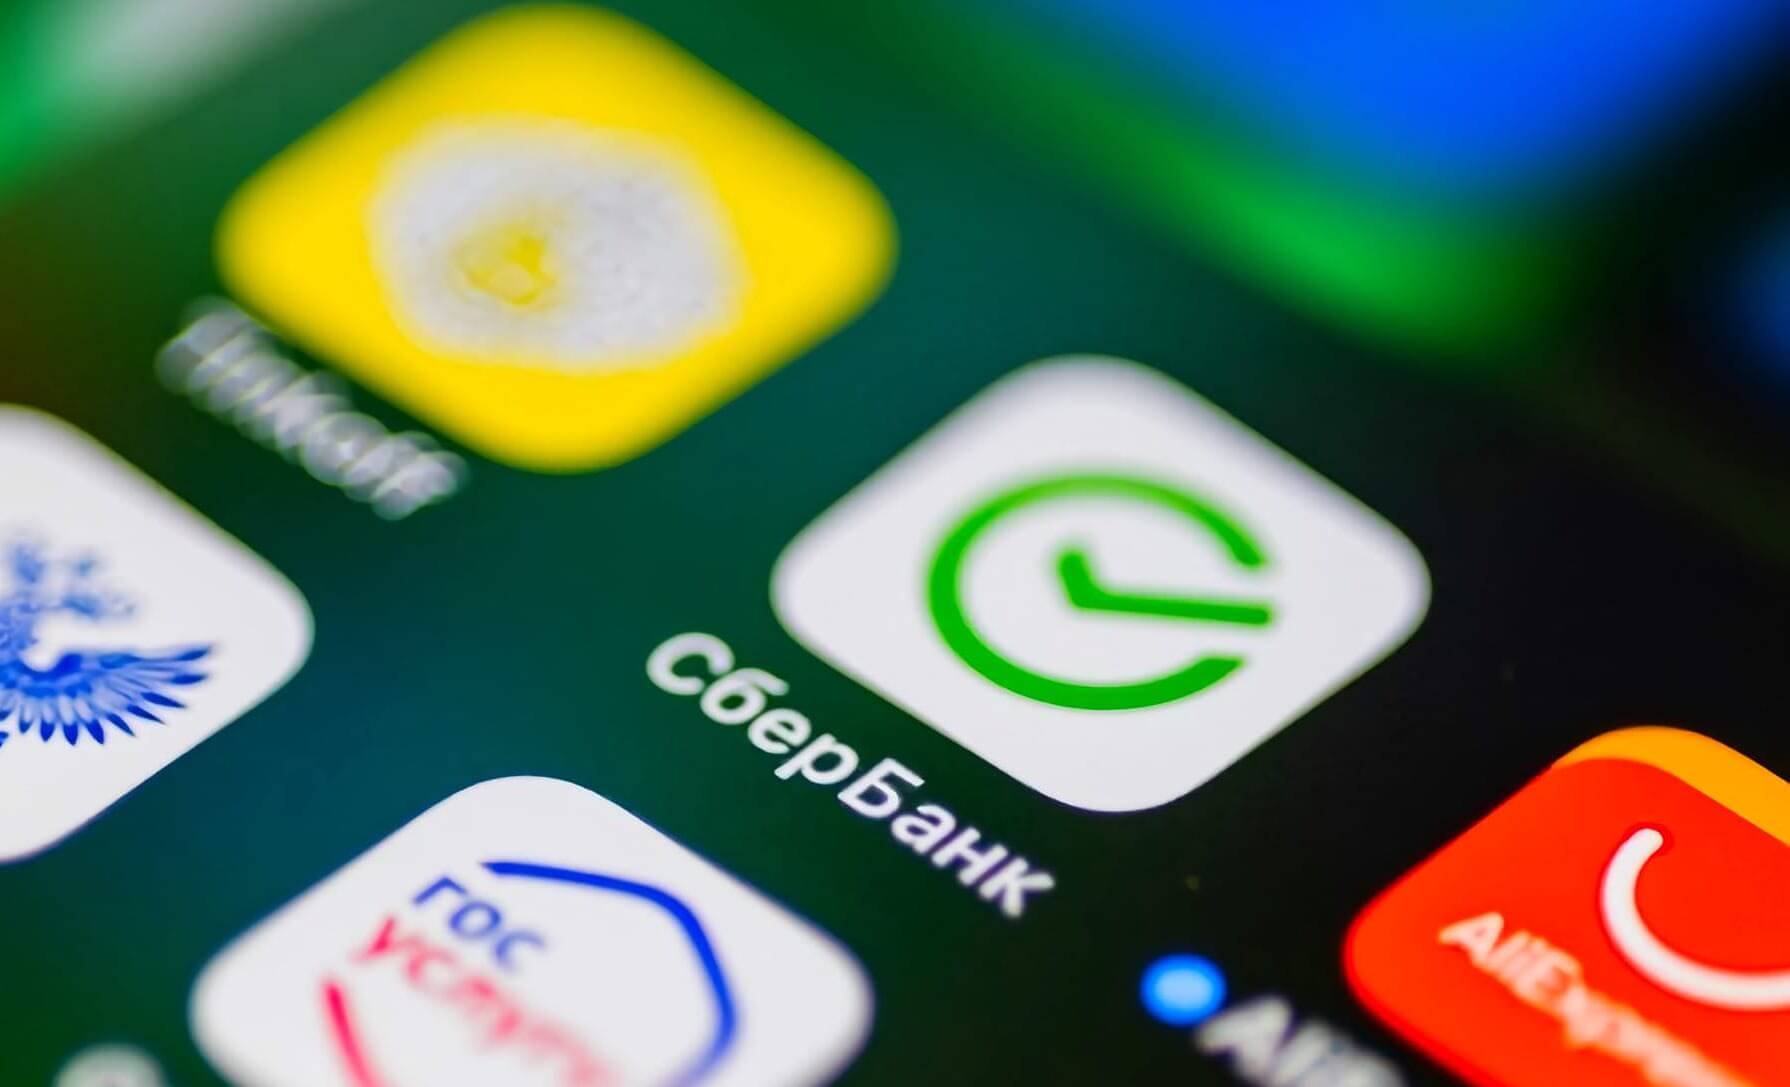 Мобильный банк Сбербанка может быть бесплатным для школьников и студентов